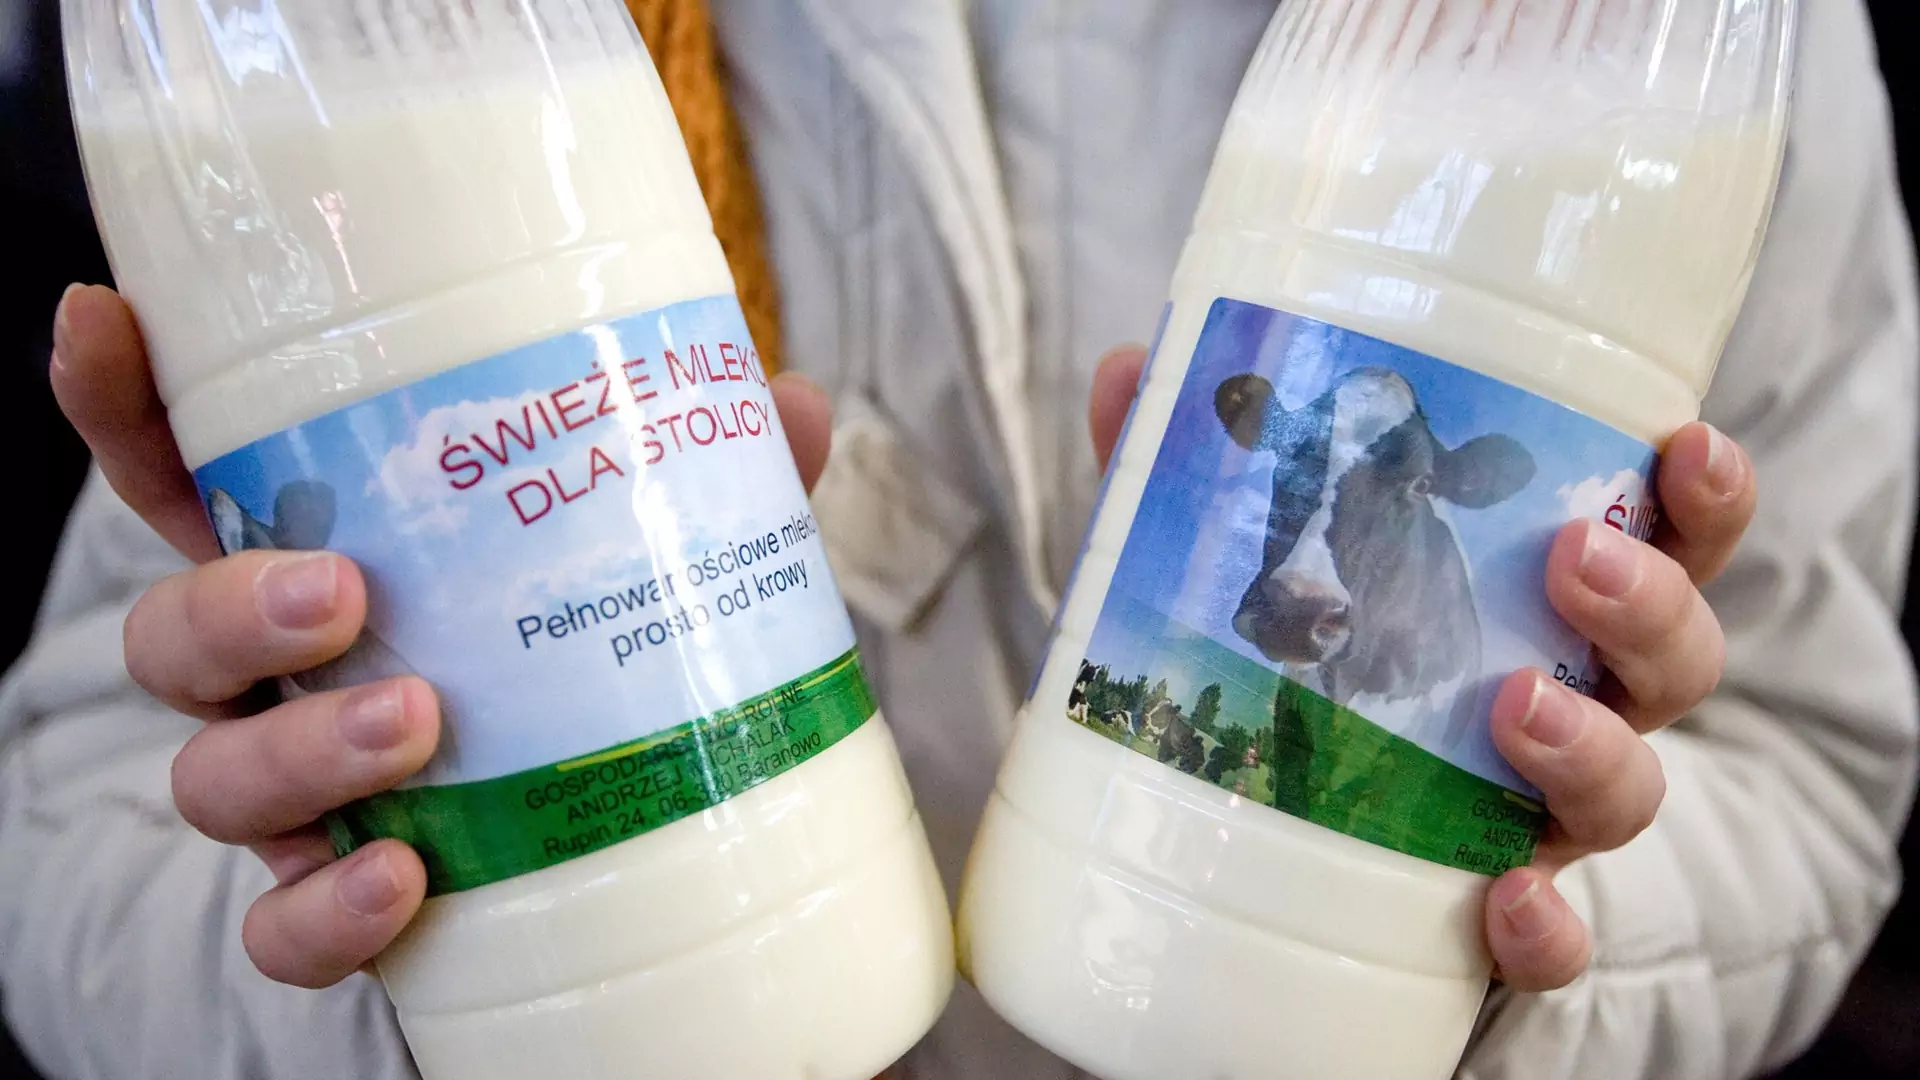 Sposoby na przechowywanie żywności: czy można bezpiecznie mrozić mleko?